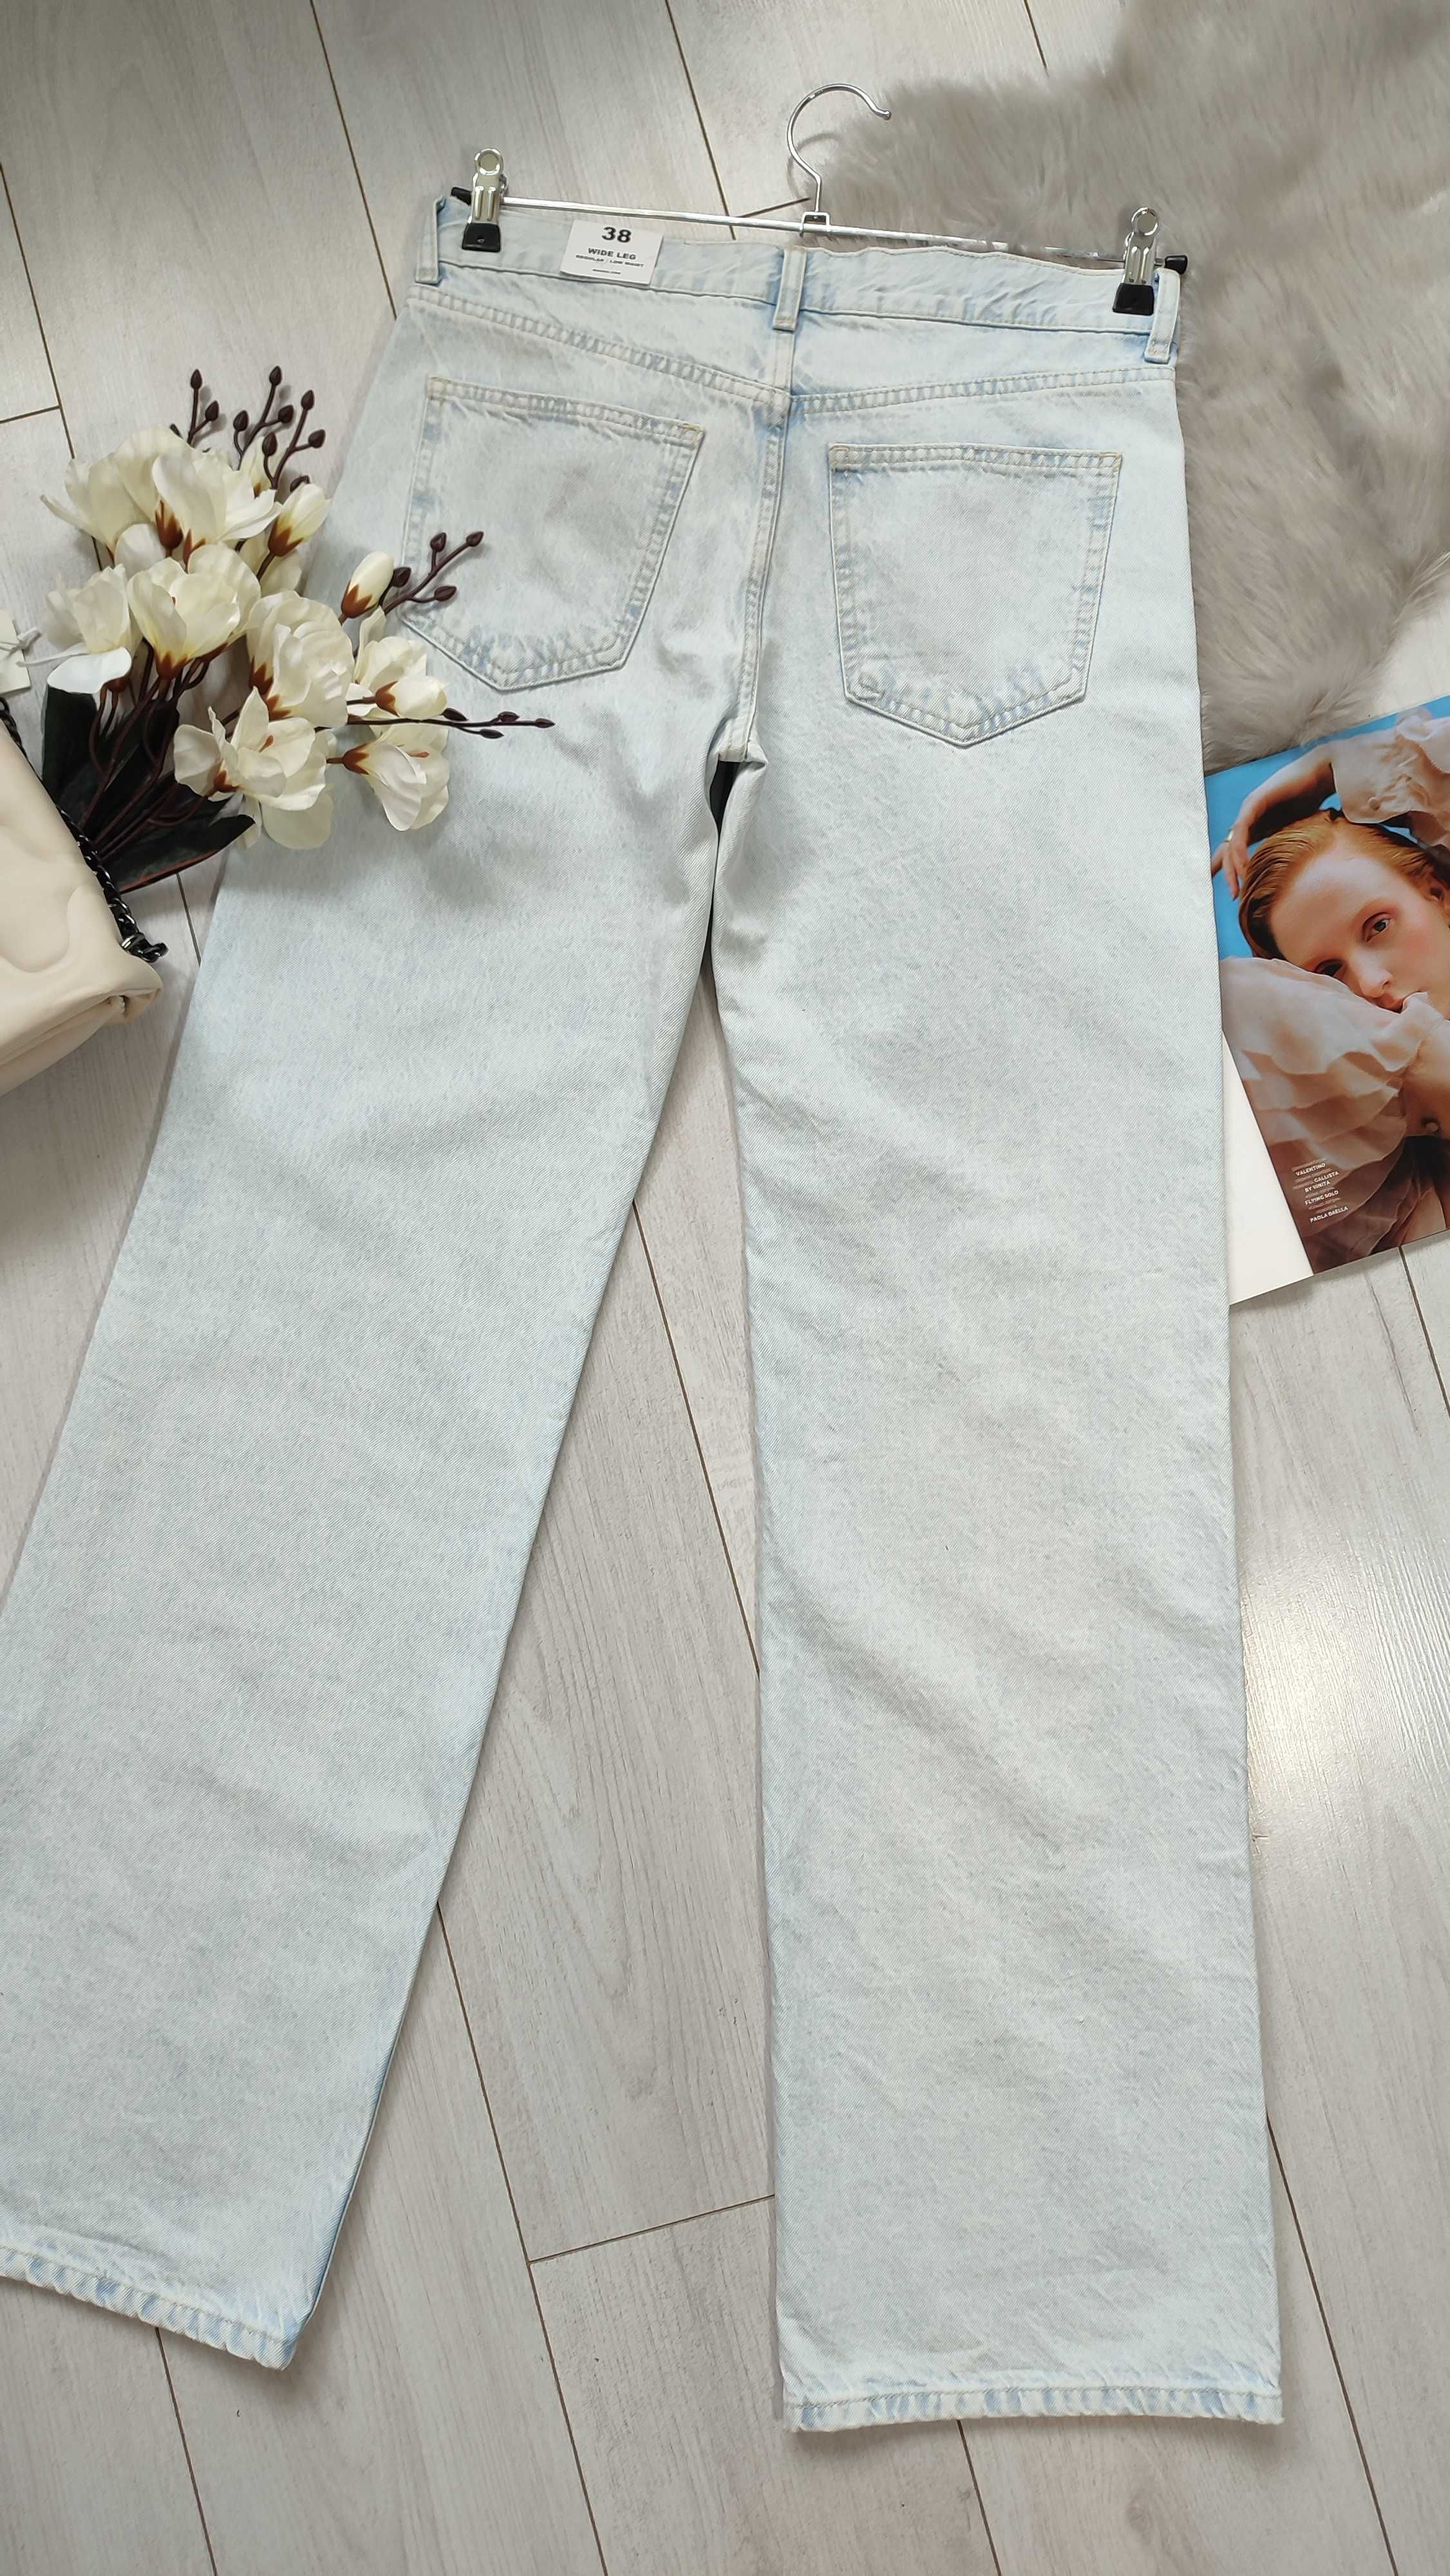 Широкие длинные джинсы от Mango, 34, 36, 38р, Испания, оригинал